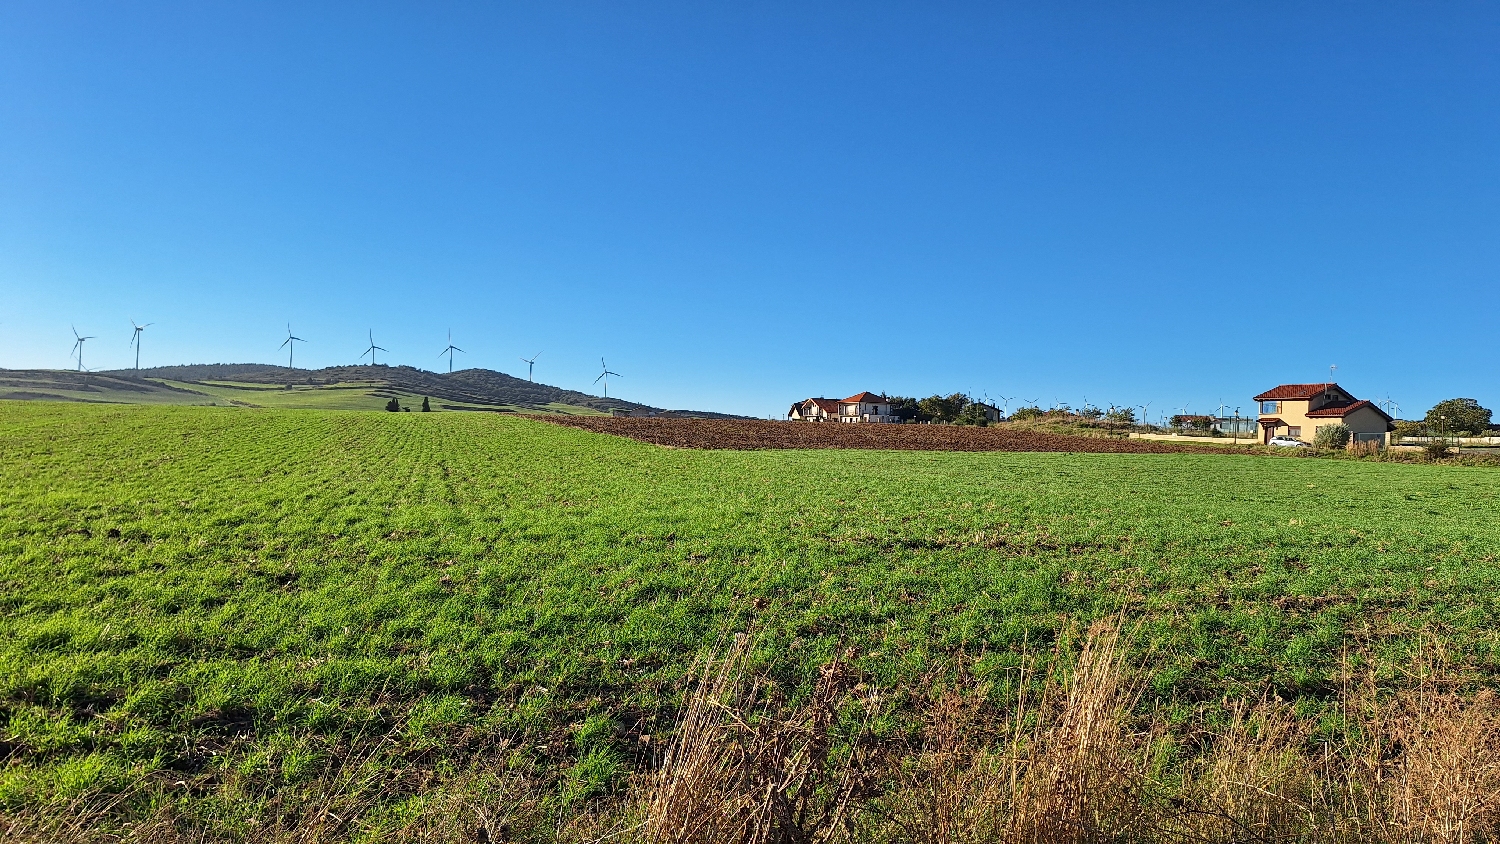 El Camino, Aragon út, mezőgazdasági terület